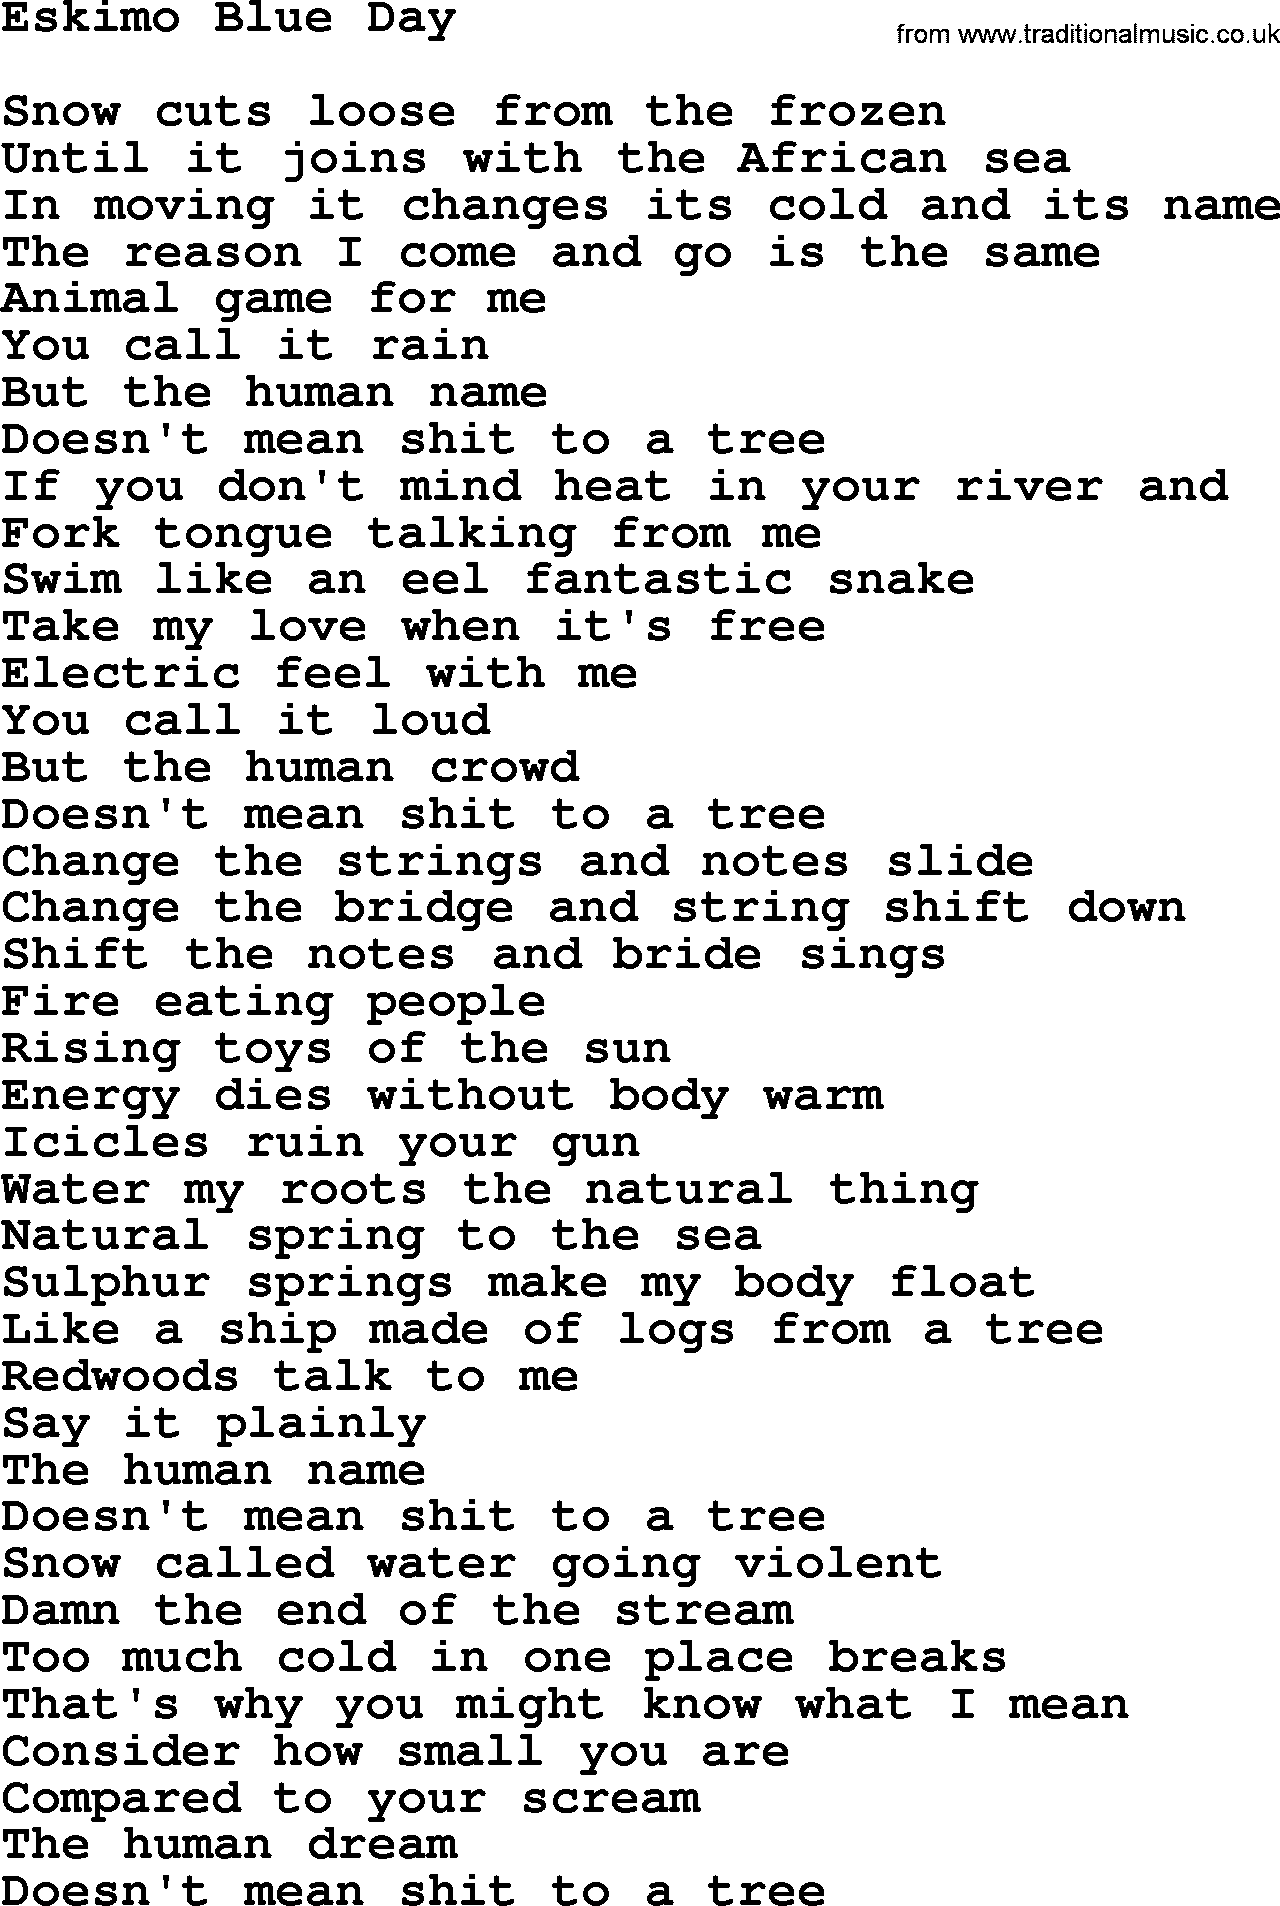 The Byrds song Eskimo Blue Day, lyrics